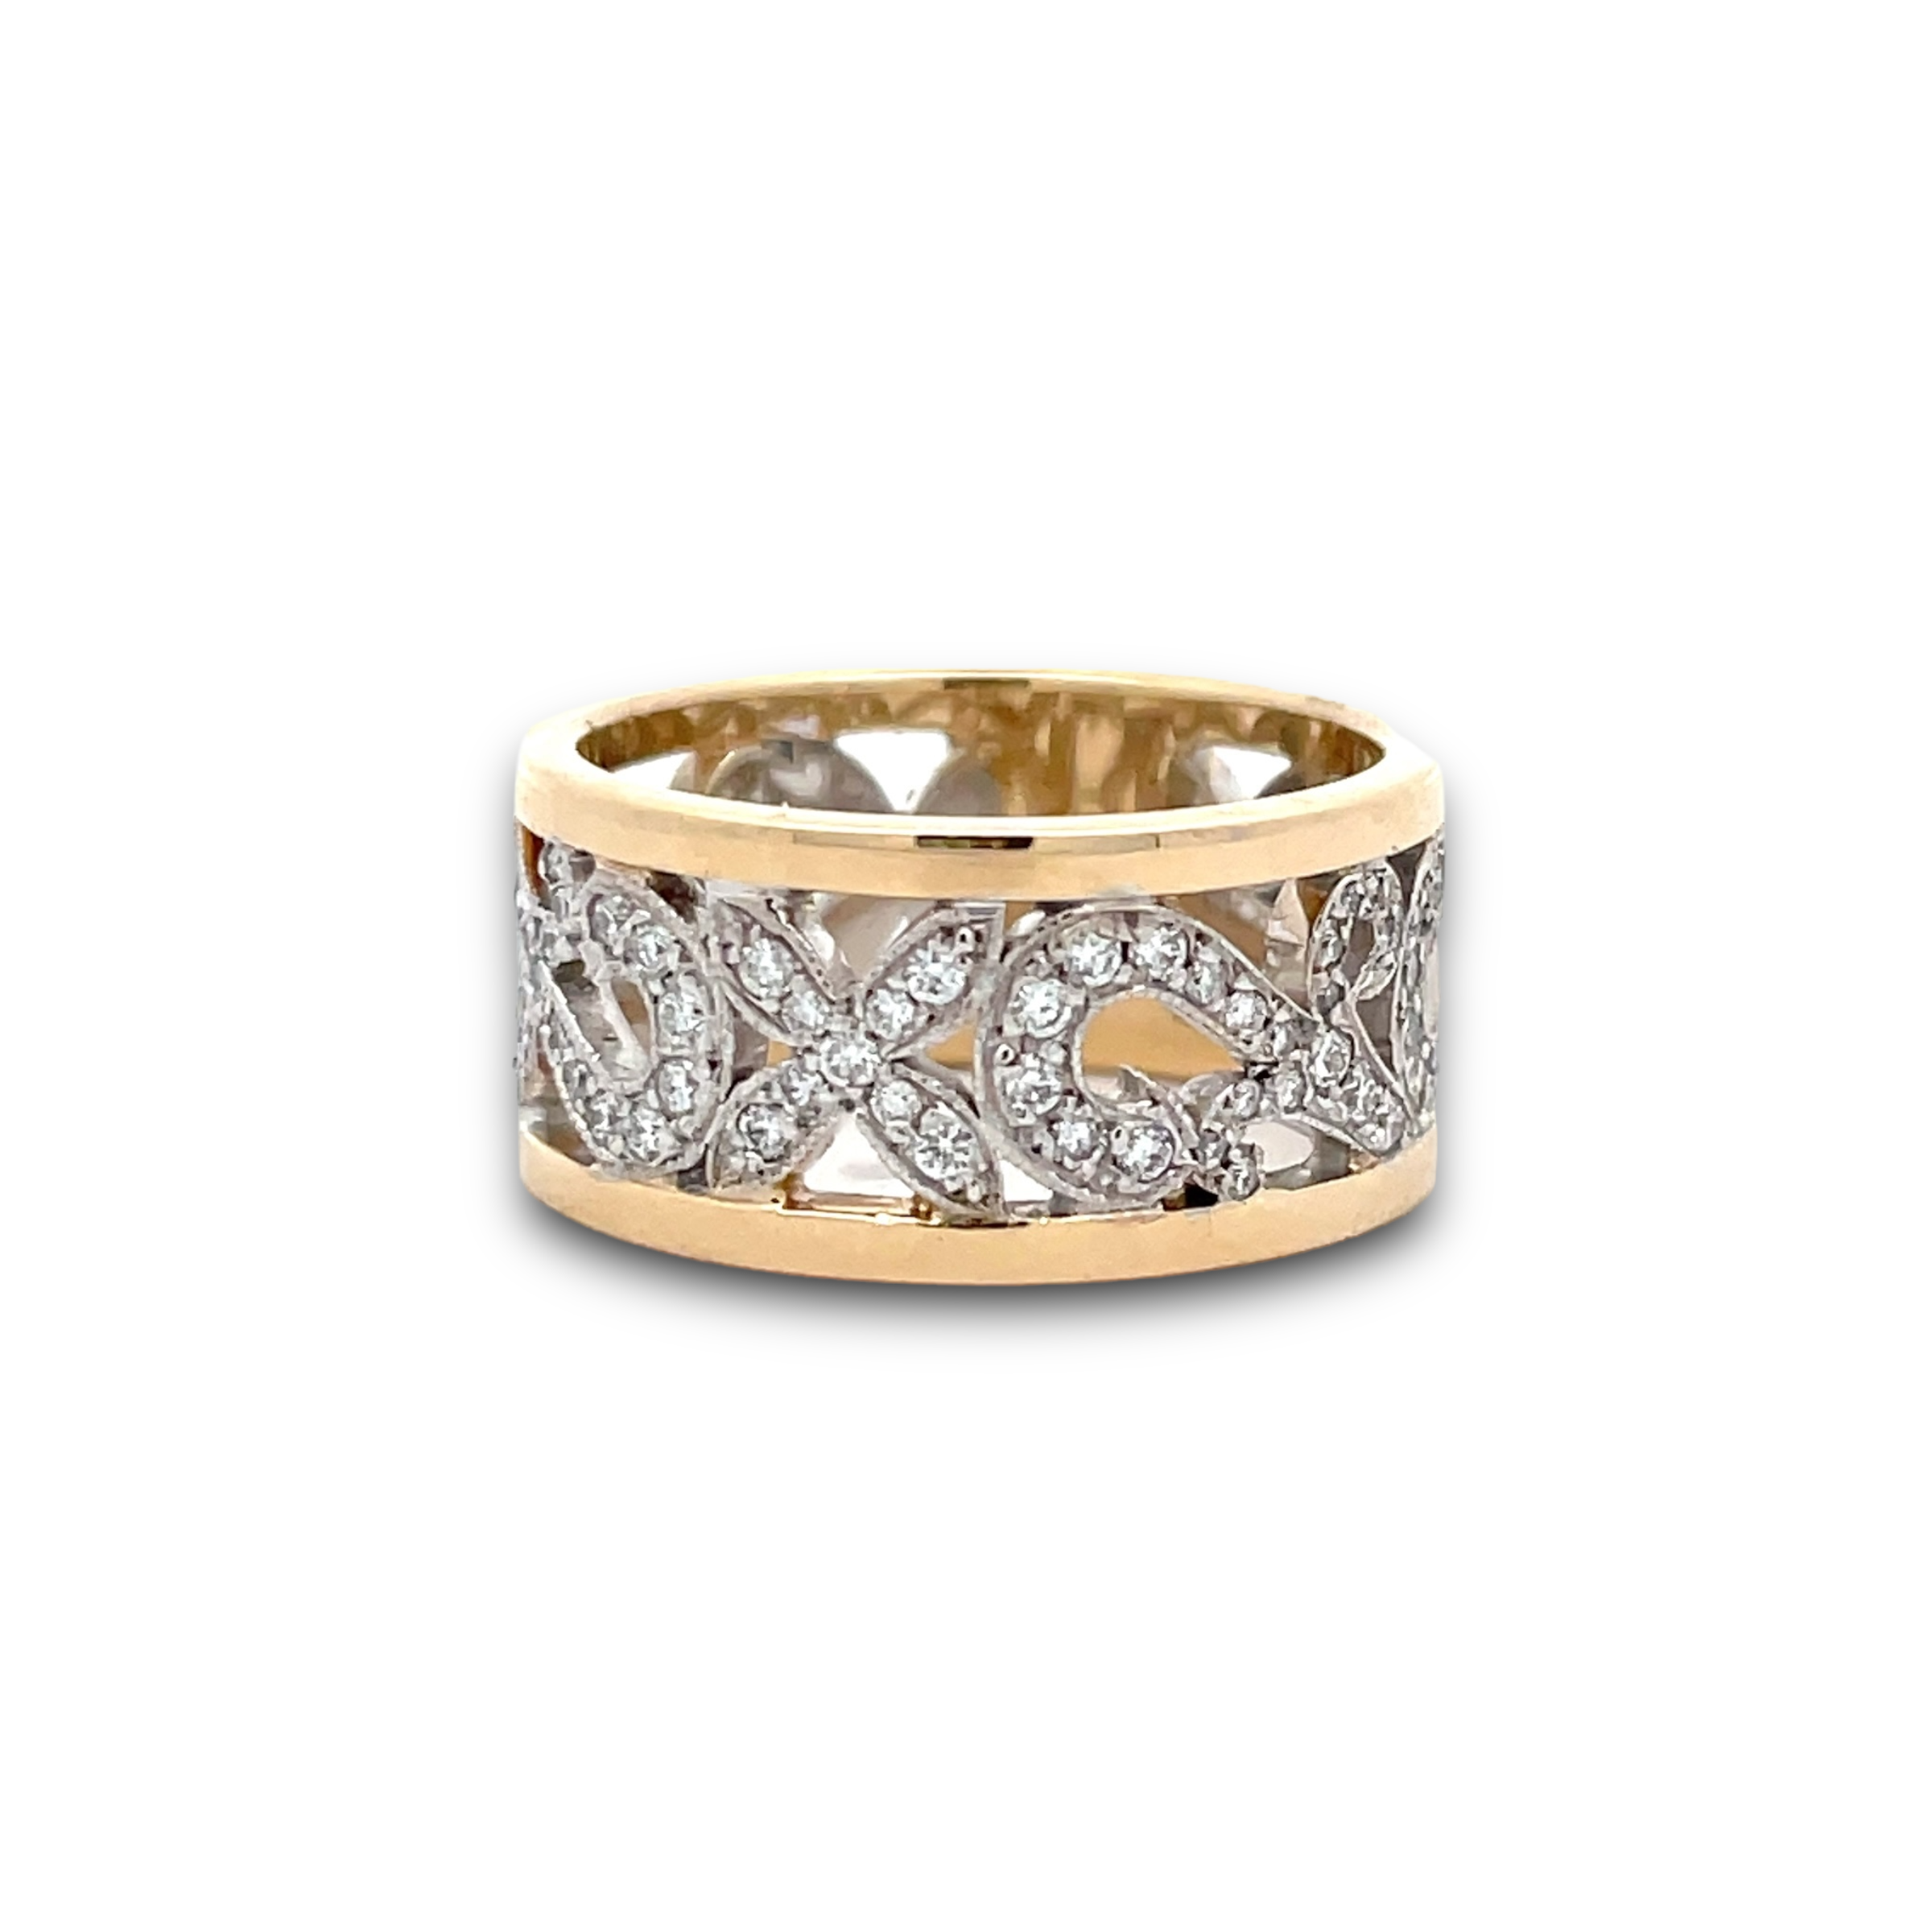 Fiorella Diamond Ring in Two-Tone White & Yellow Gold